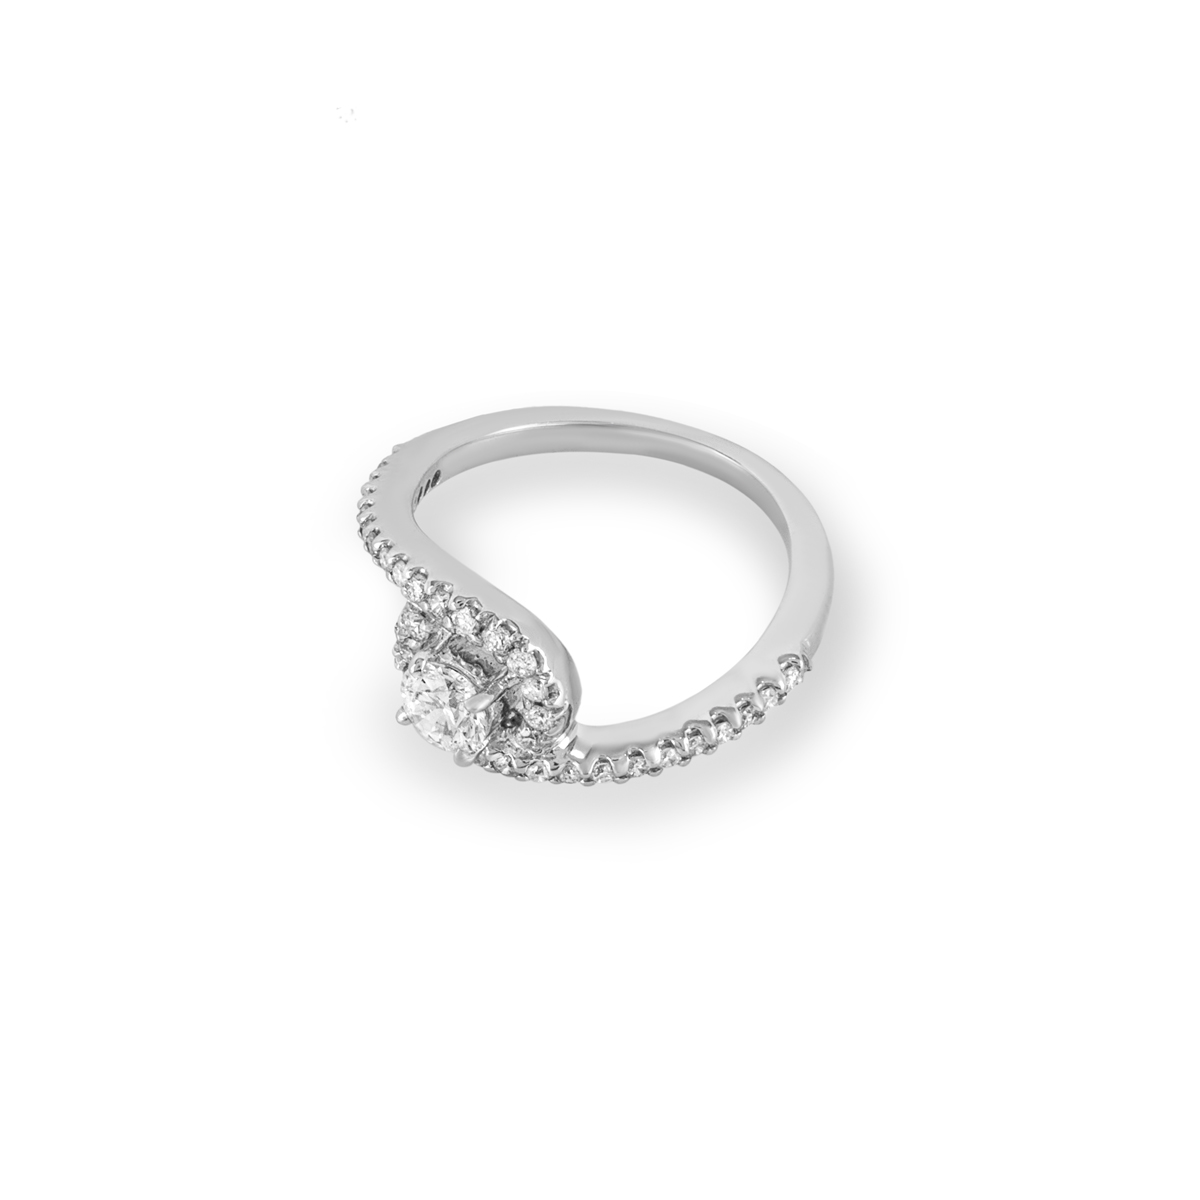 White Gold Round Brilliant Cut Diamond Ring 0.32ct I/VS2